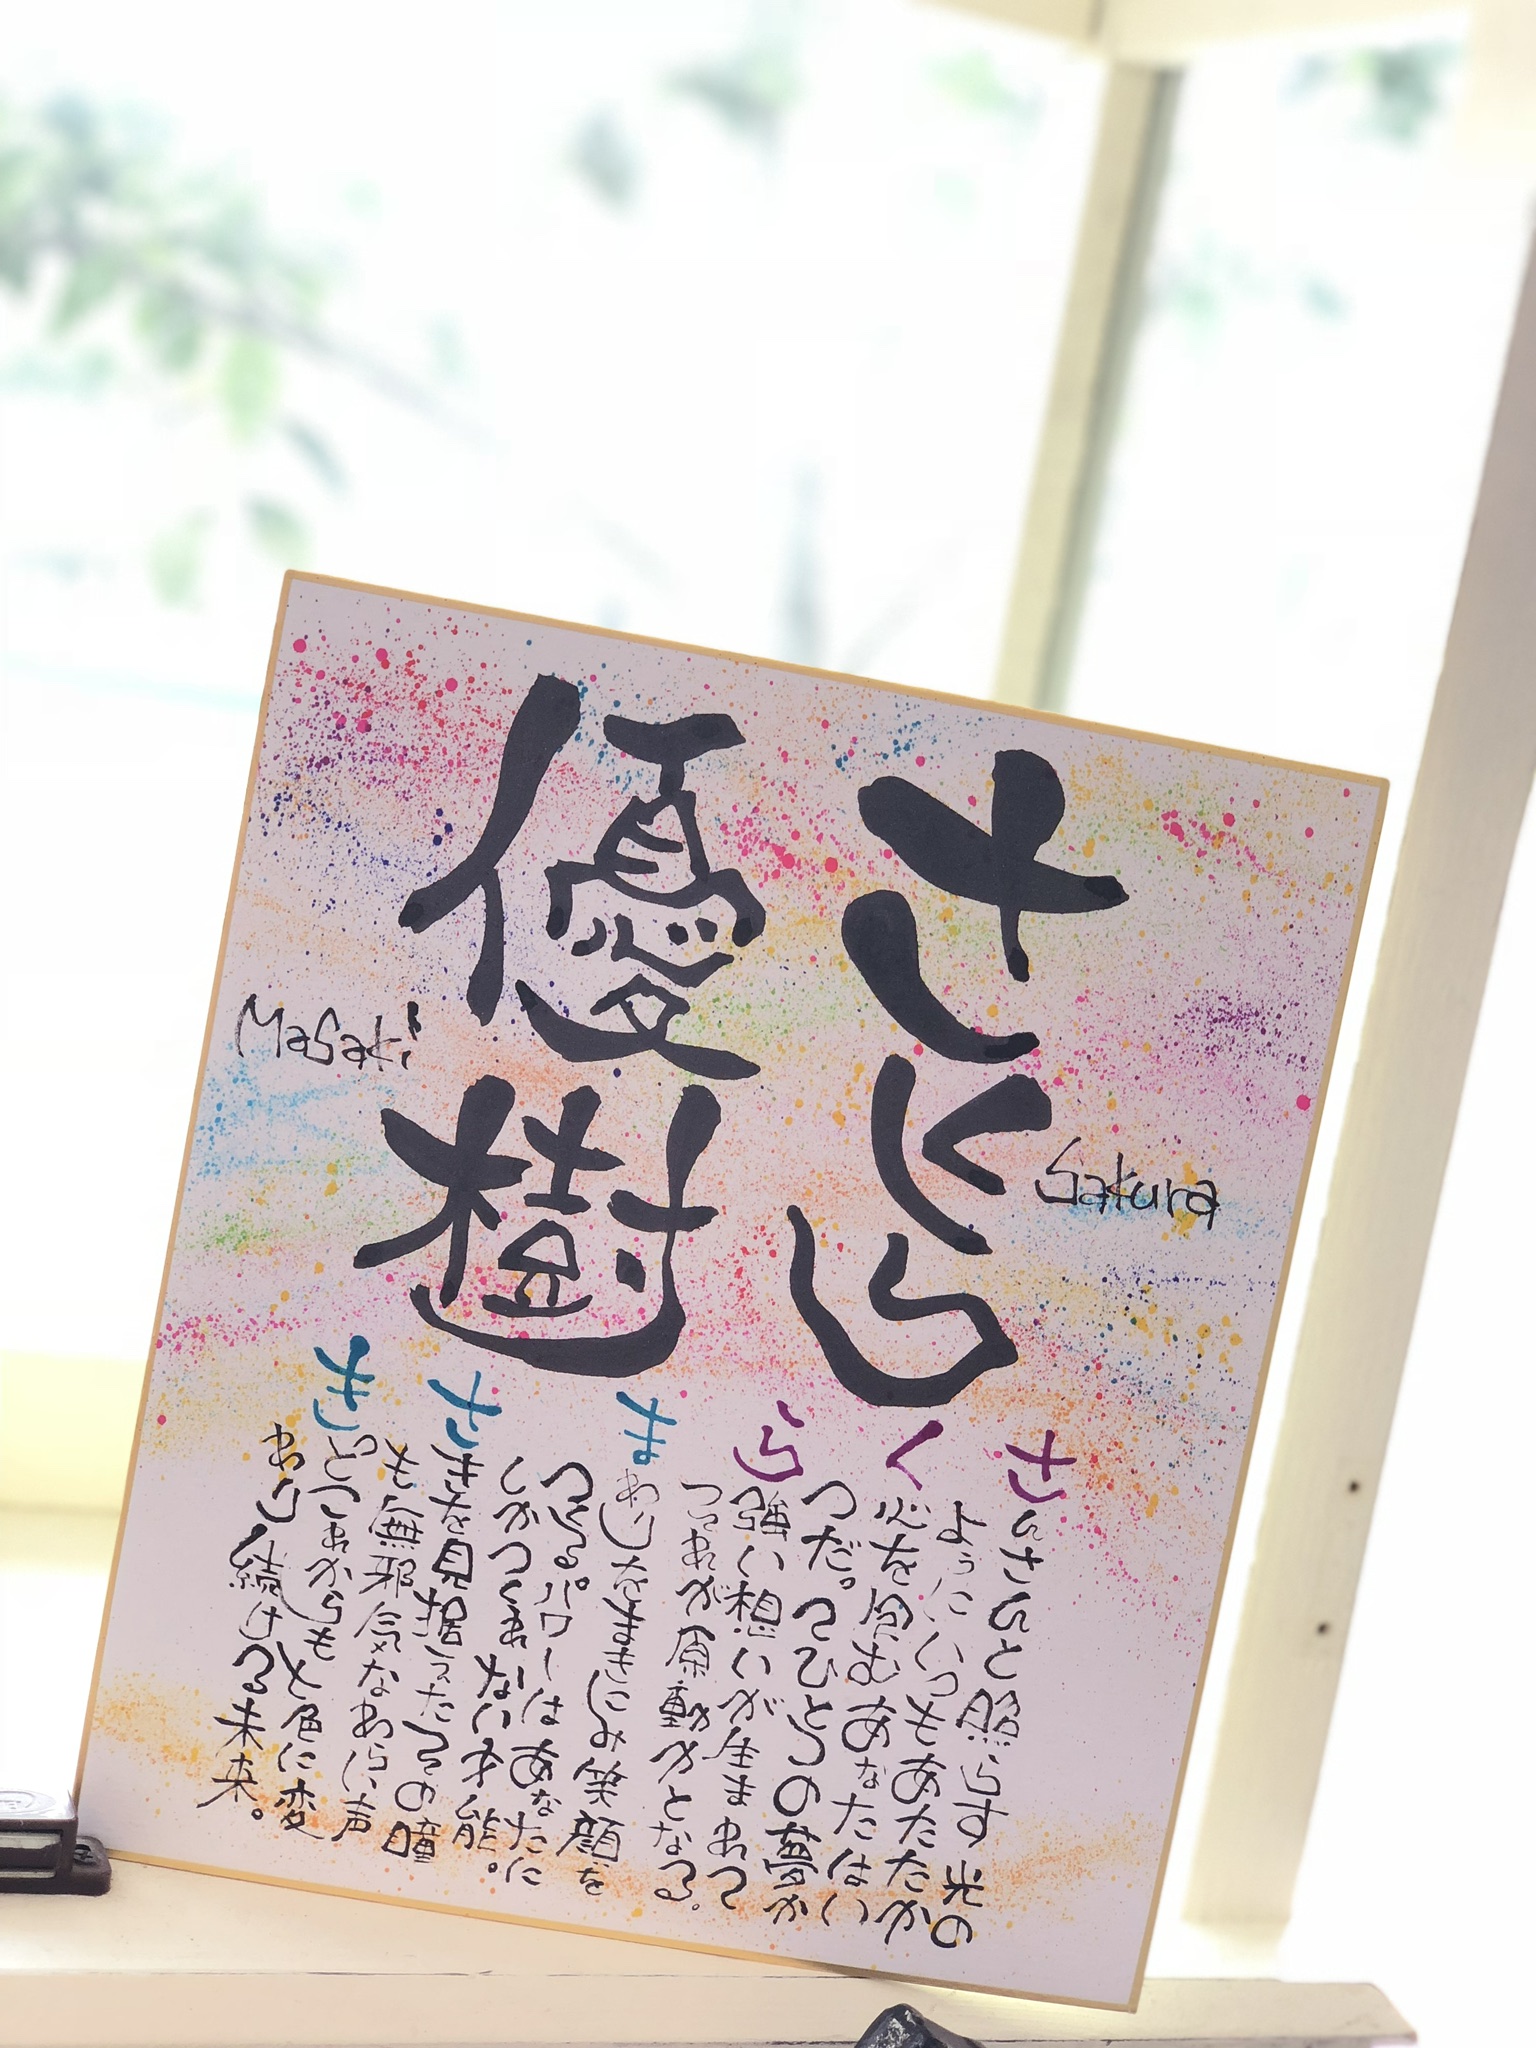 筆文字art Misa 世界にひとつの名前唄 湊川公園手しごと市 毎月第4土曜日に神戸の湊川公園で開催される手づくり市